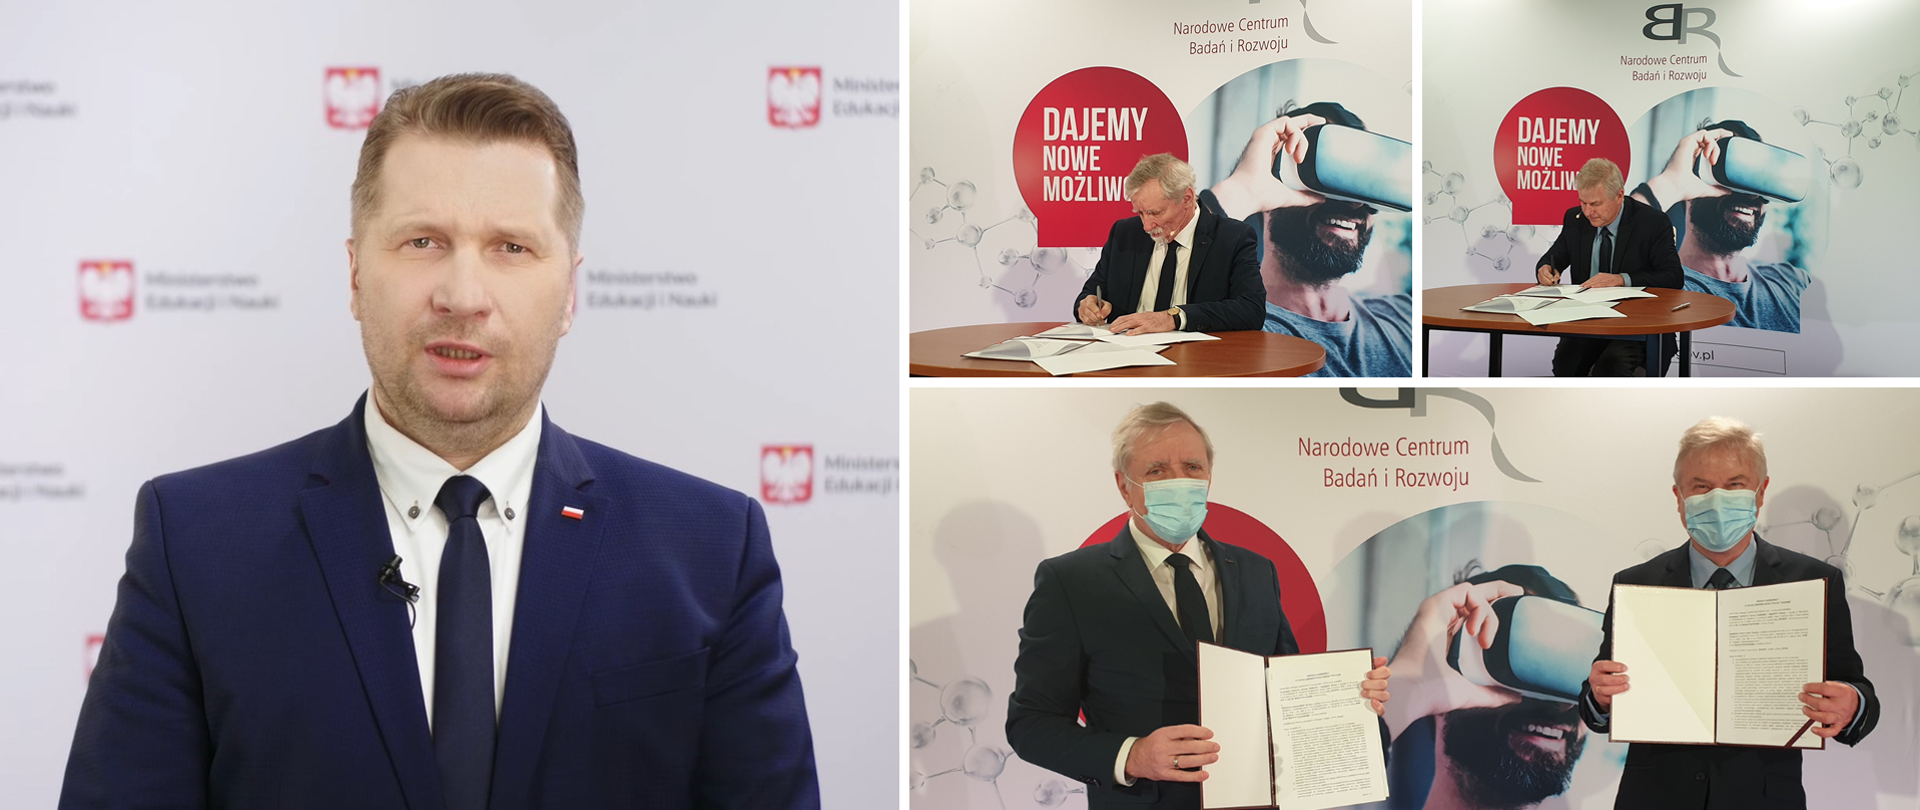 Zdjęcie z podpisania umowy przez Narodowe Centrum Badań i Rozwoju oraz Narodowy Fundusz Ochrony Środowiska i Gospodarki Wodnej o współpracy na rzecz rozwoju w Polsce zielonych technologii.